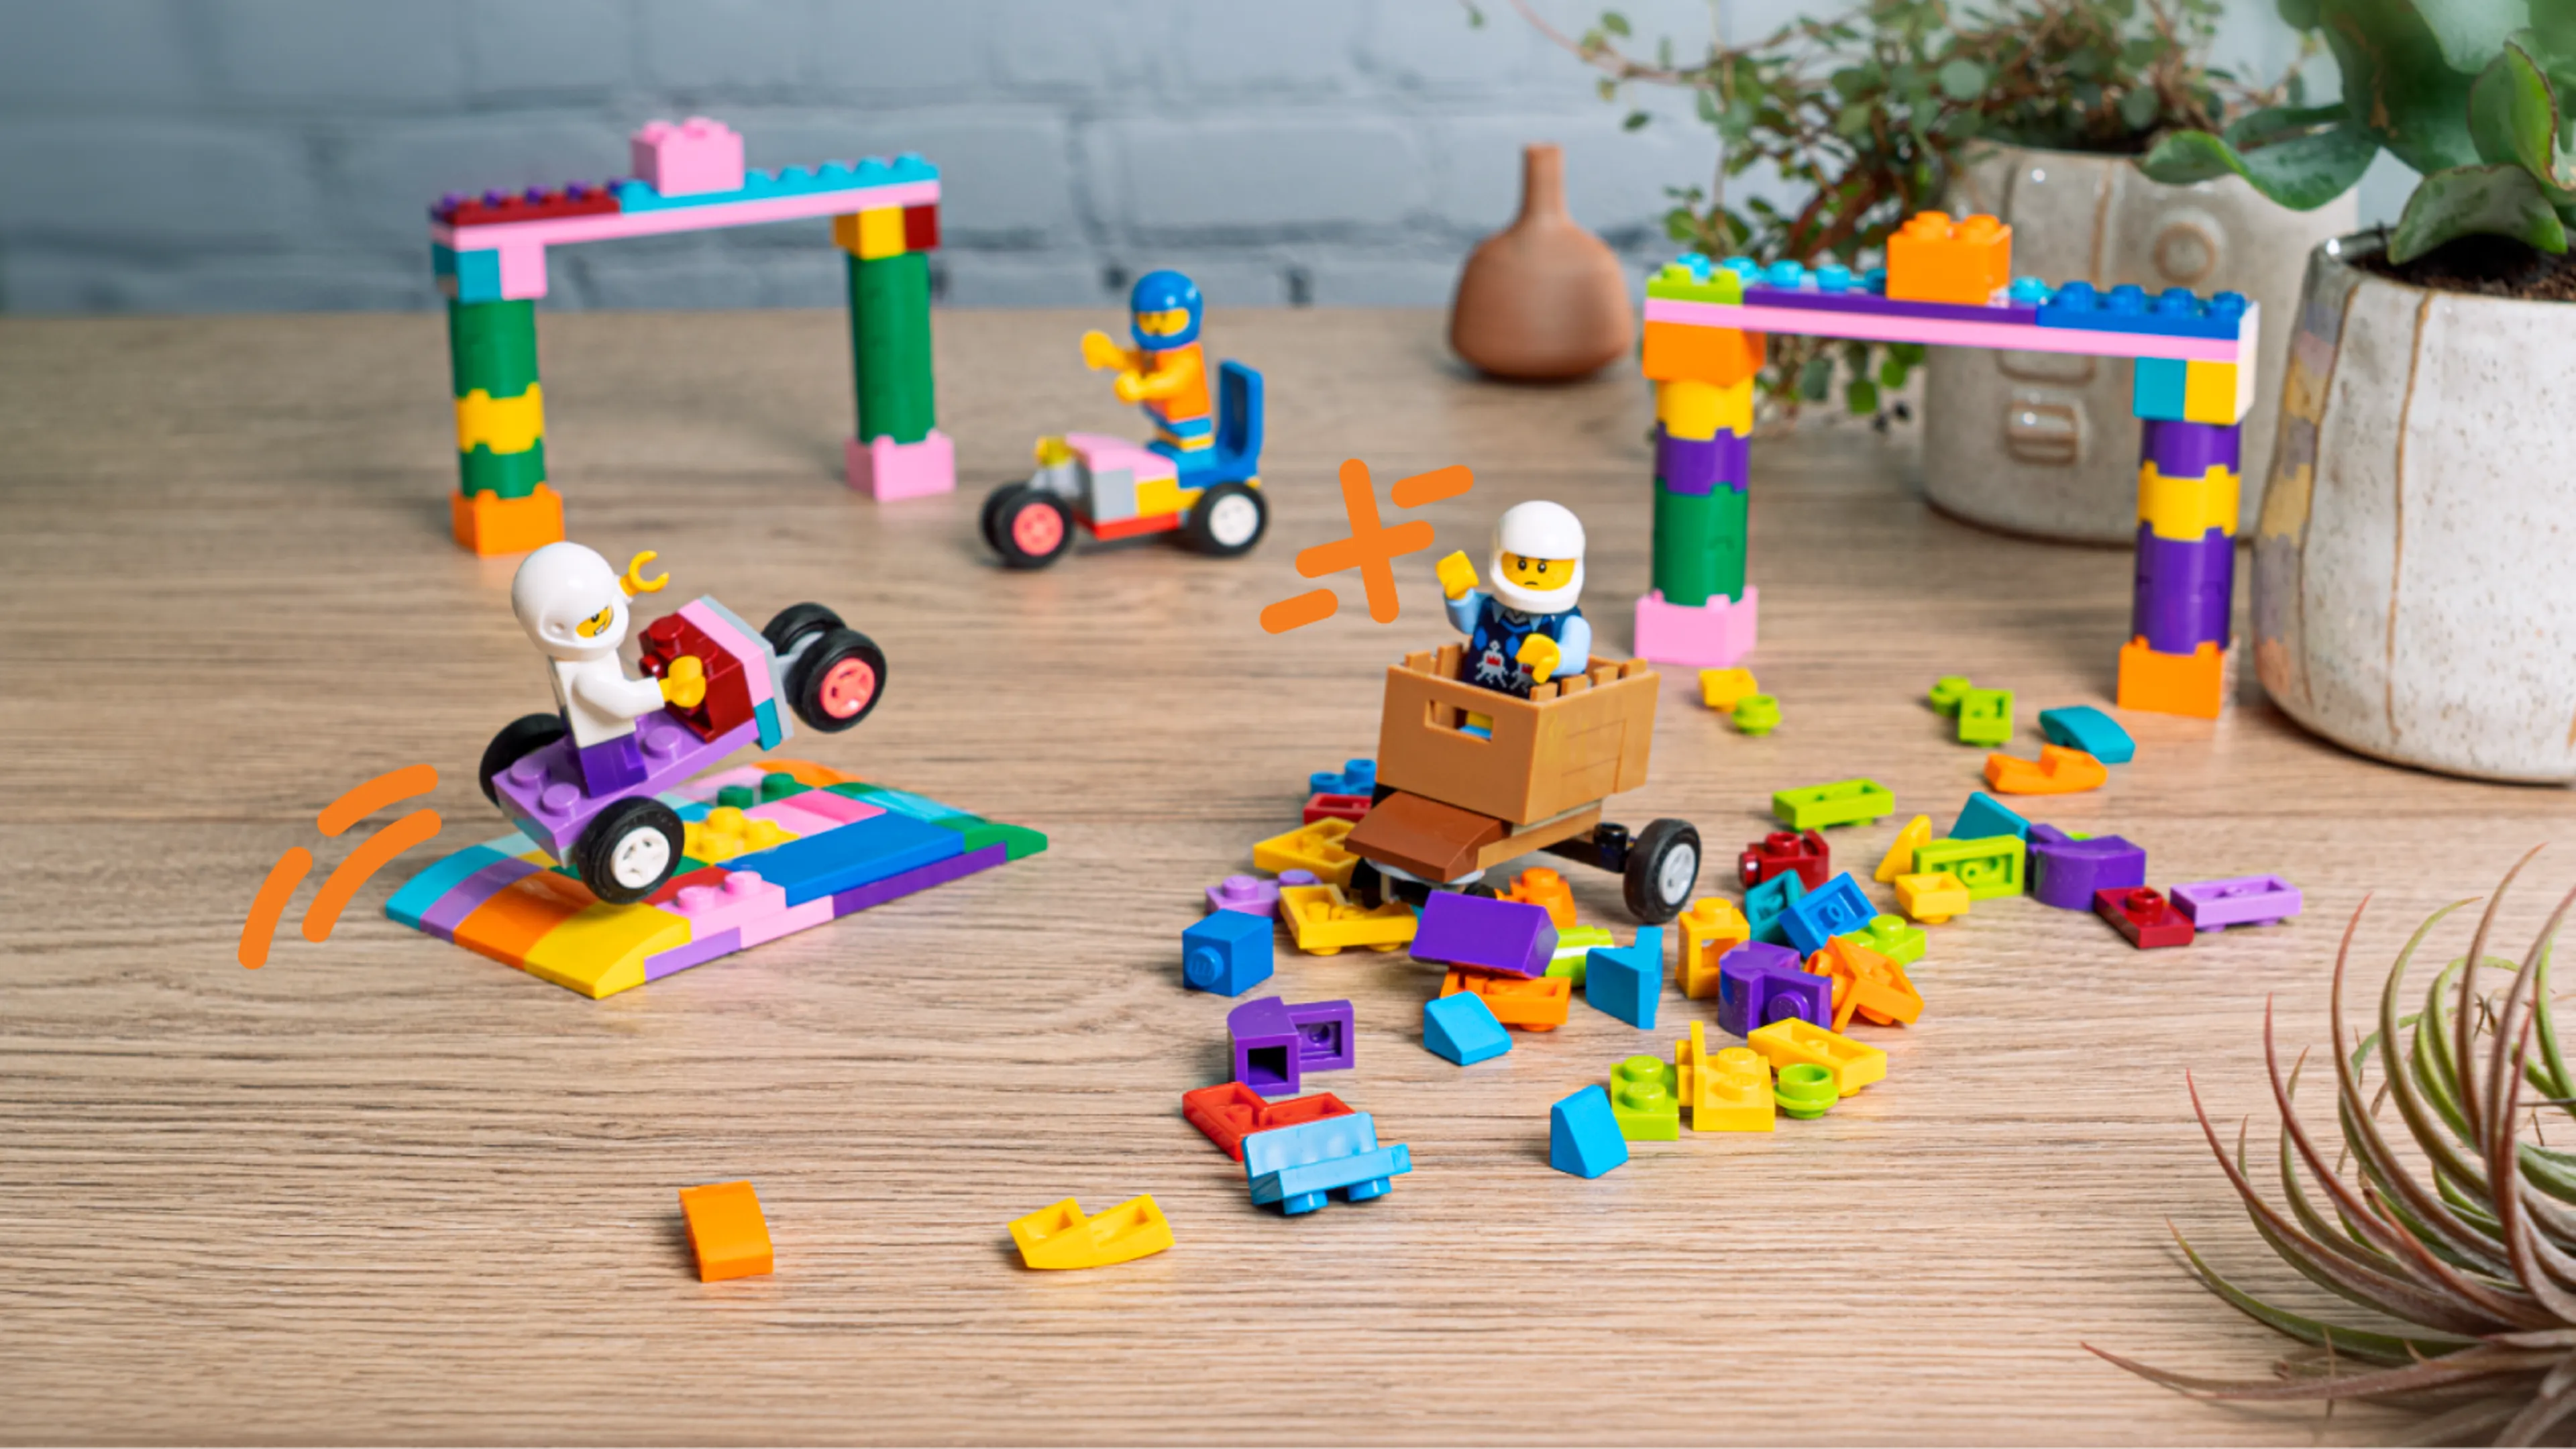 Minifiguren, LEGO-Seifenkistenautos, Zäune und ein Stapel Ziegelsteine